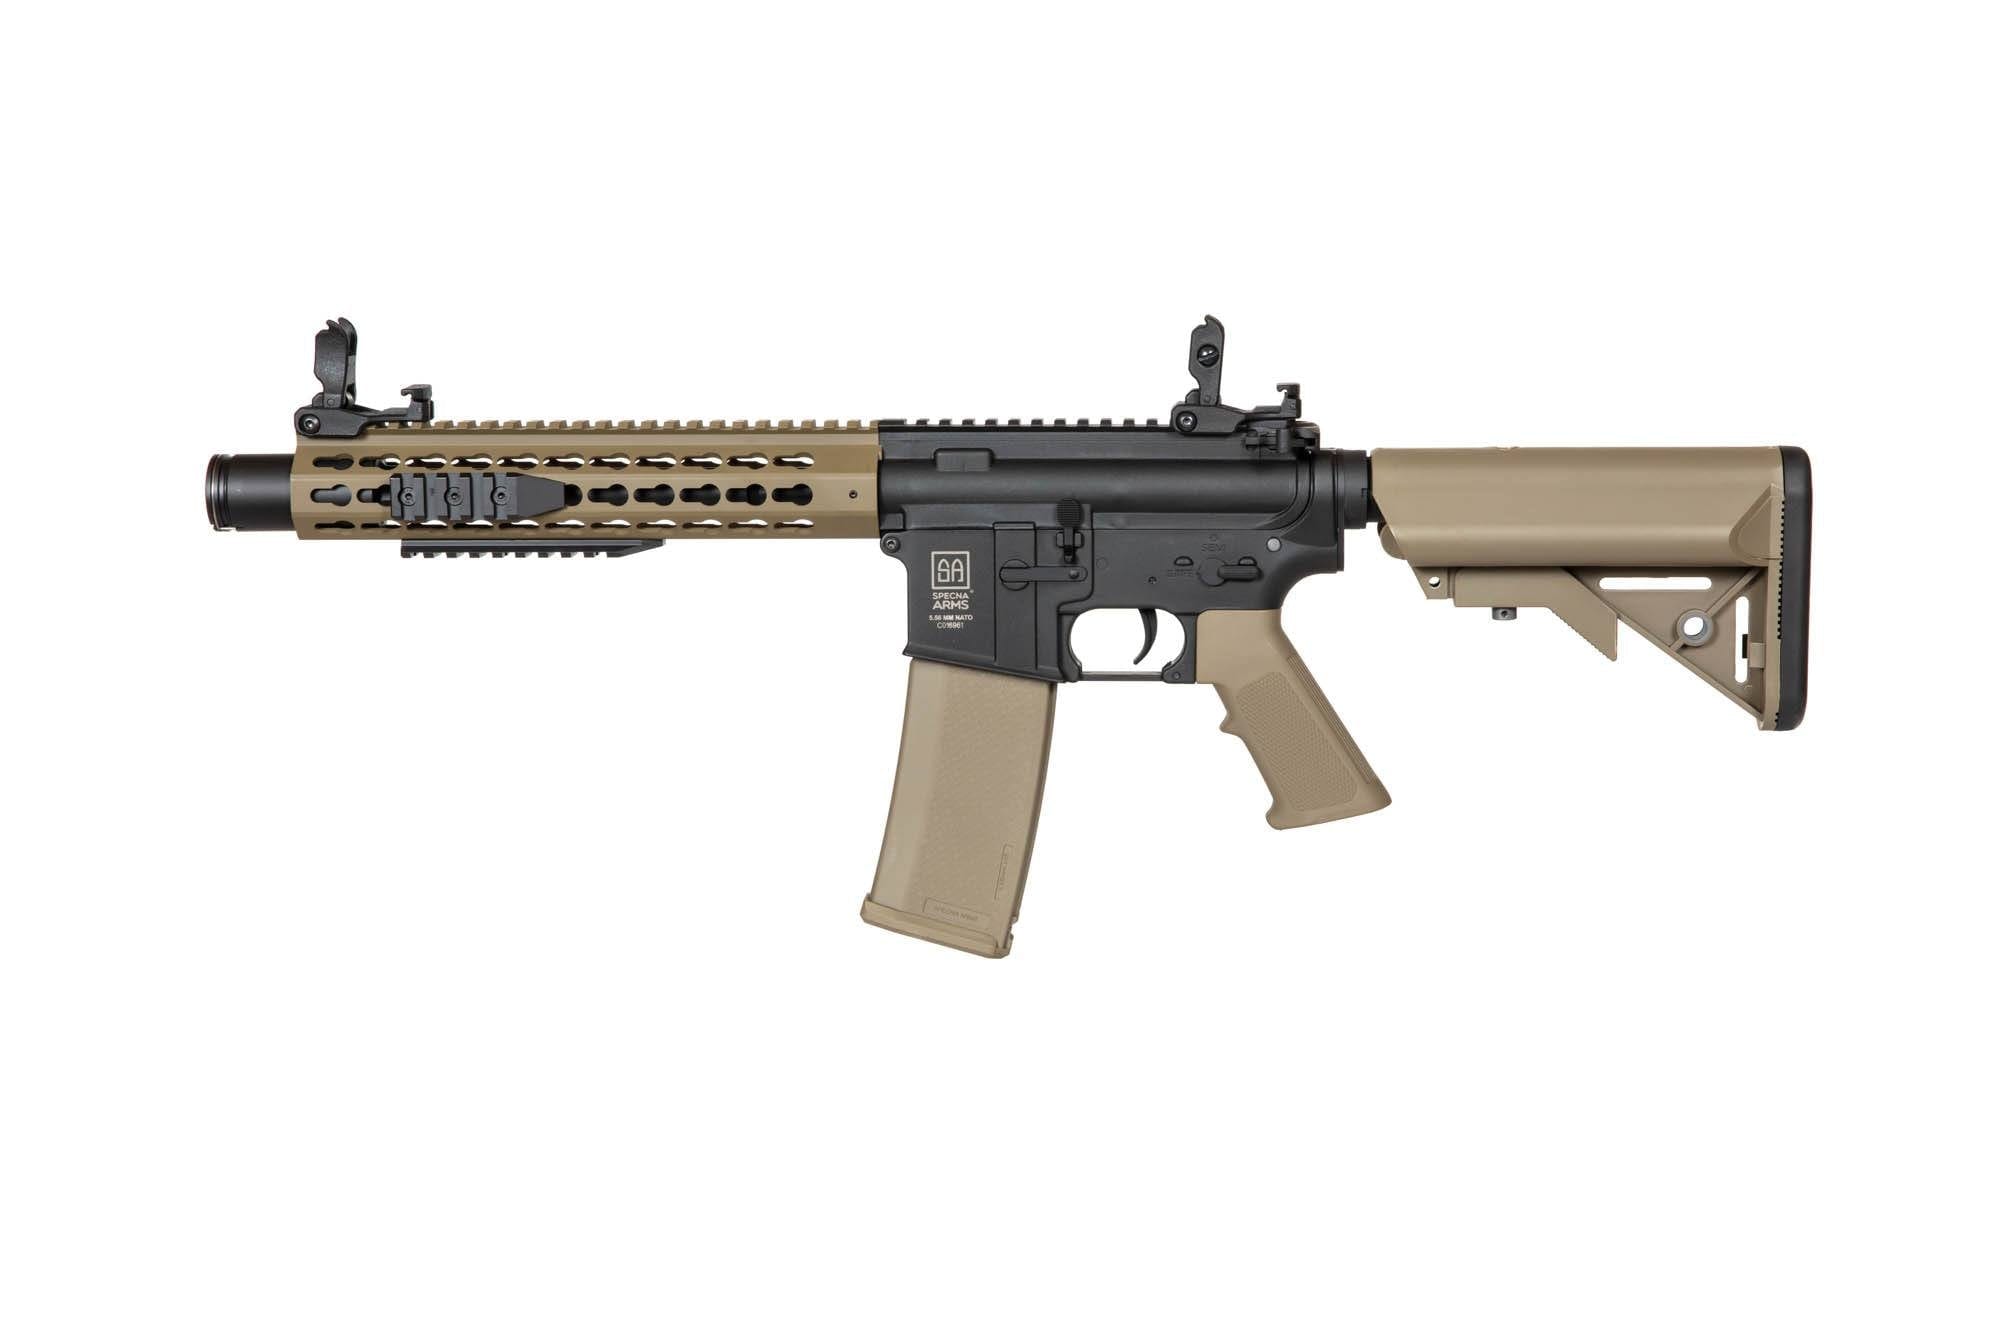 SA-C07 CORE™ X-ASR™ Carbine Replica - Half-Tan